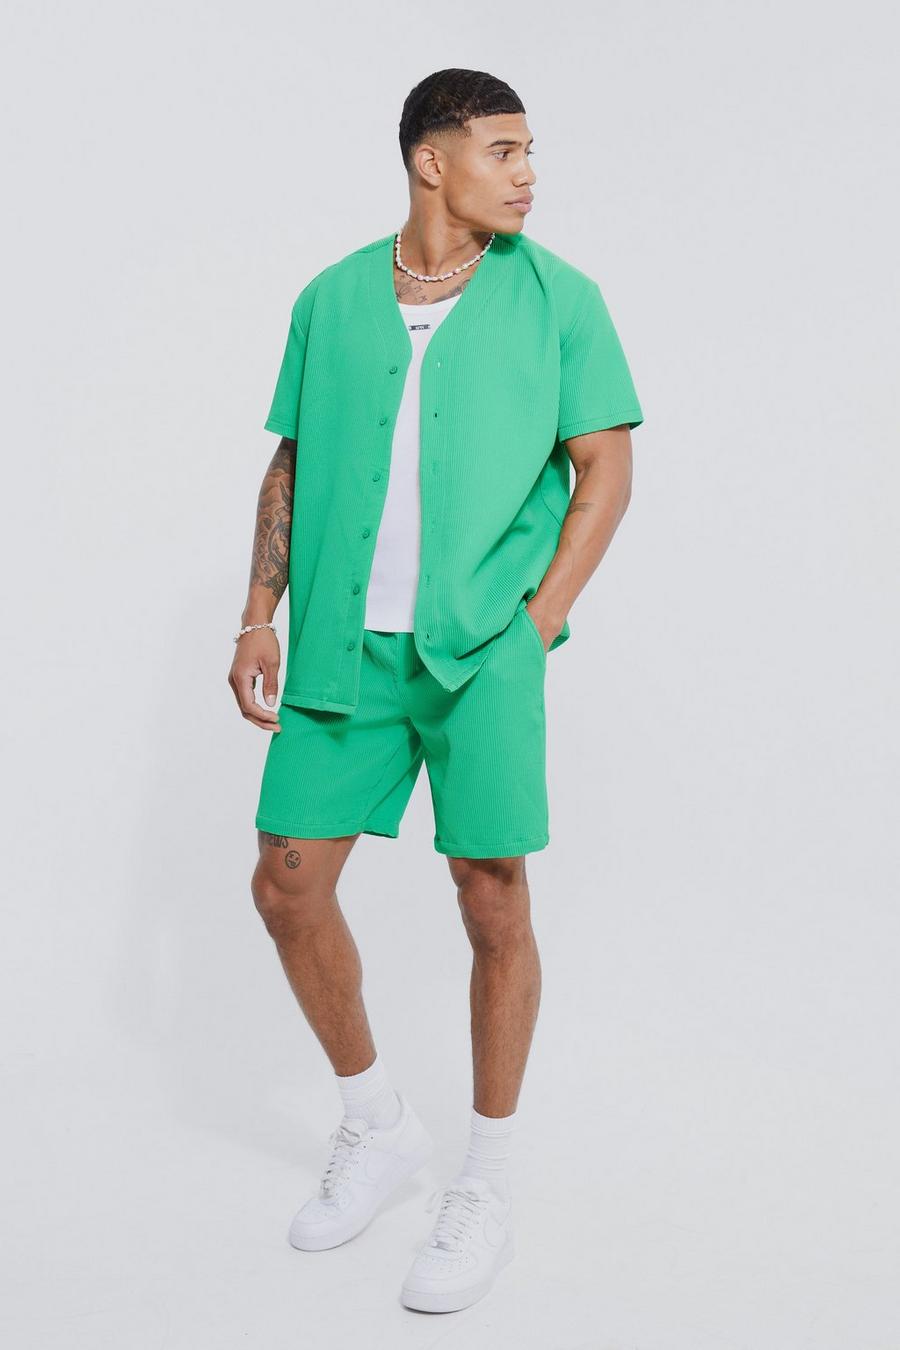 Green Pleated Baseball Shirt And Short Set